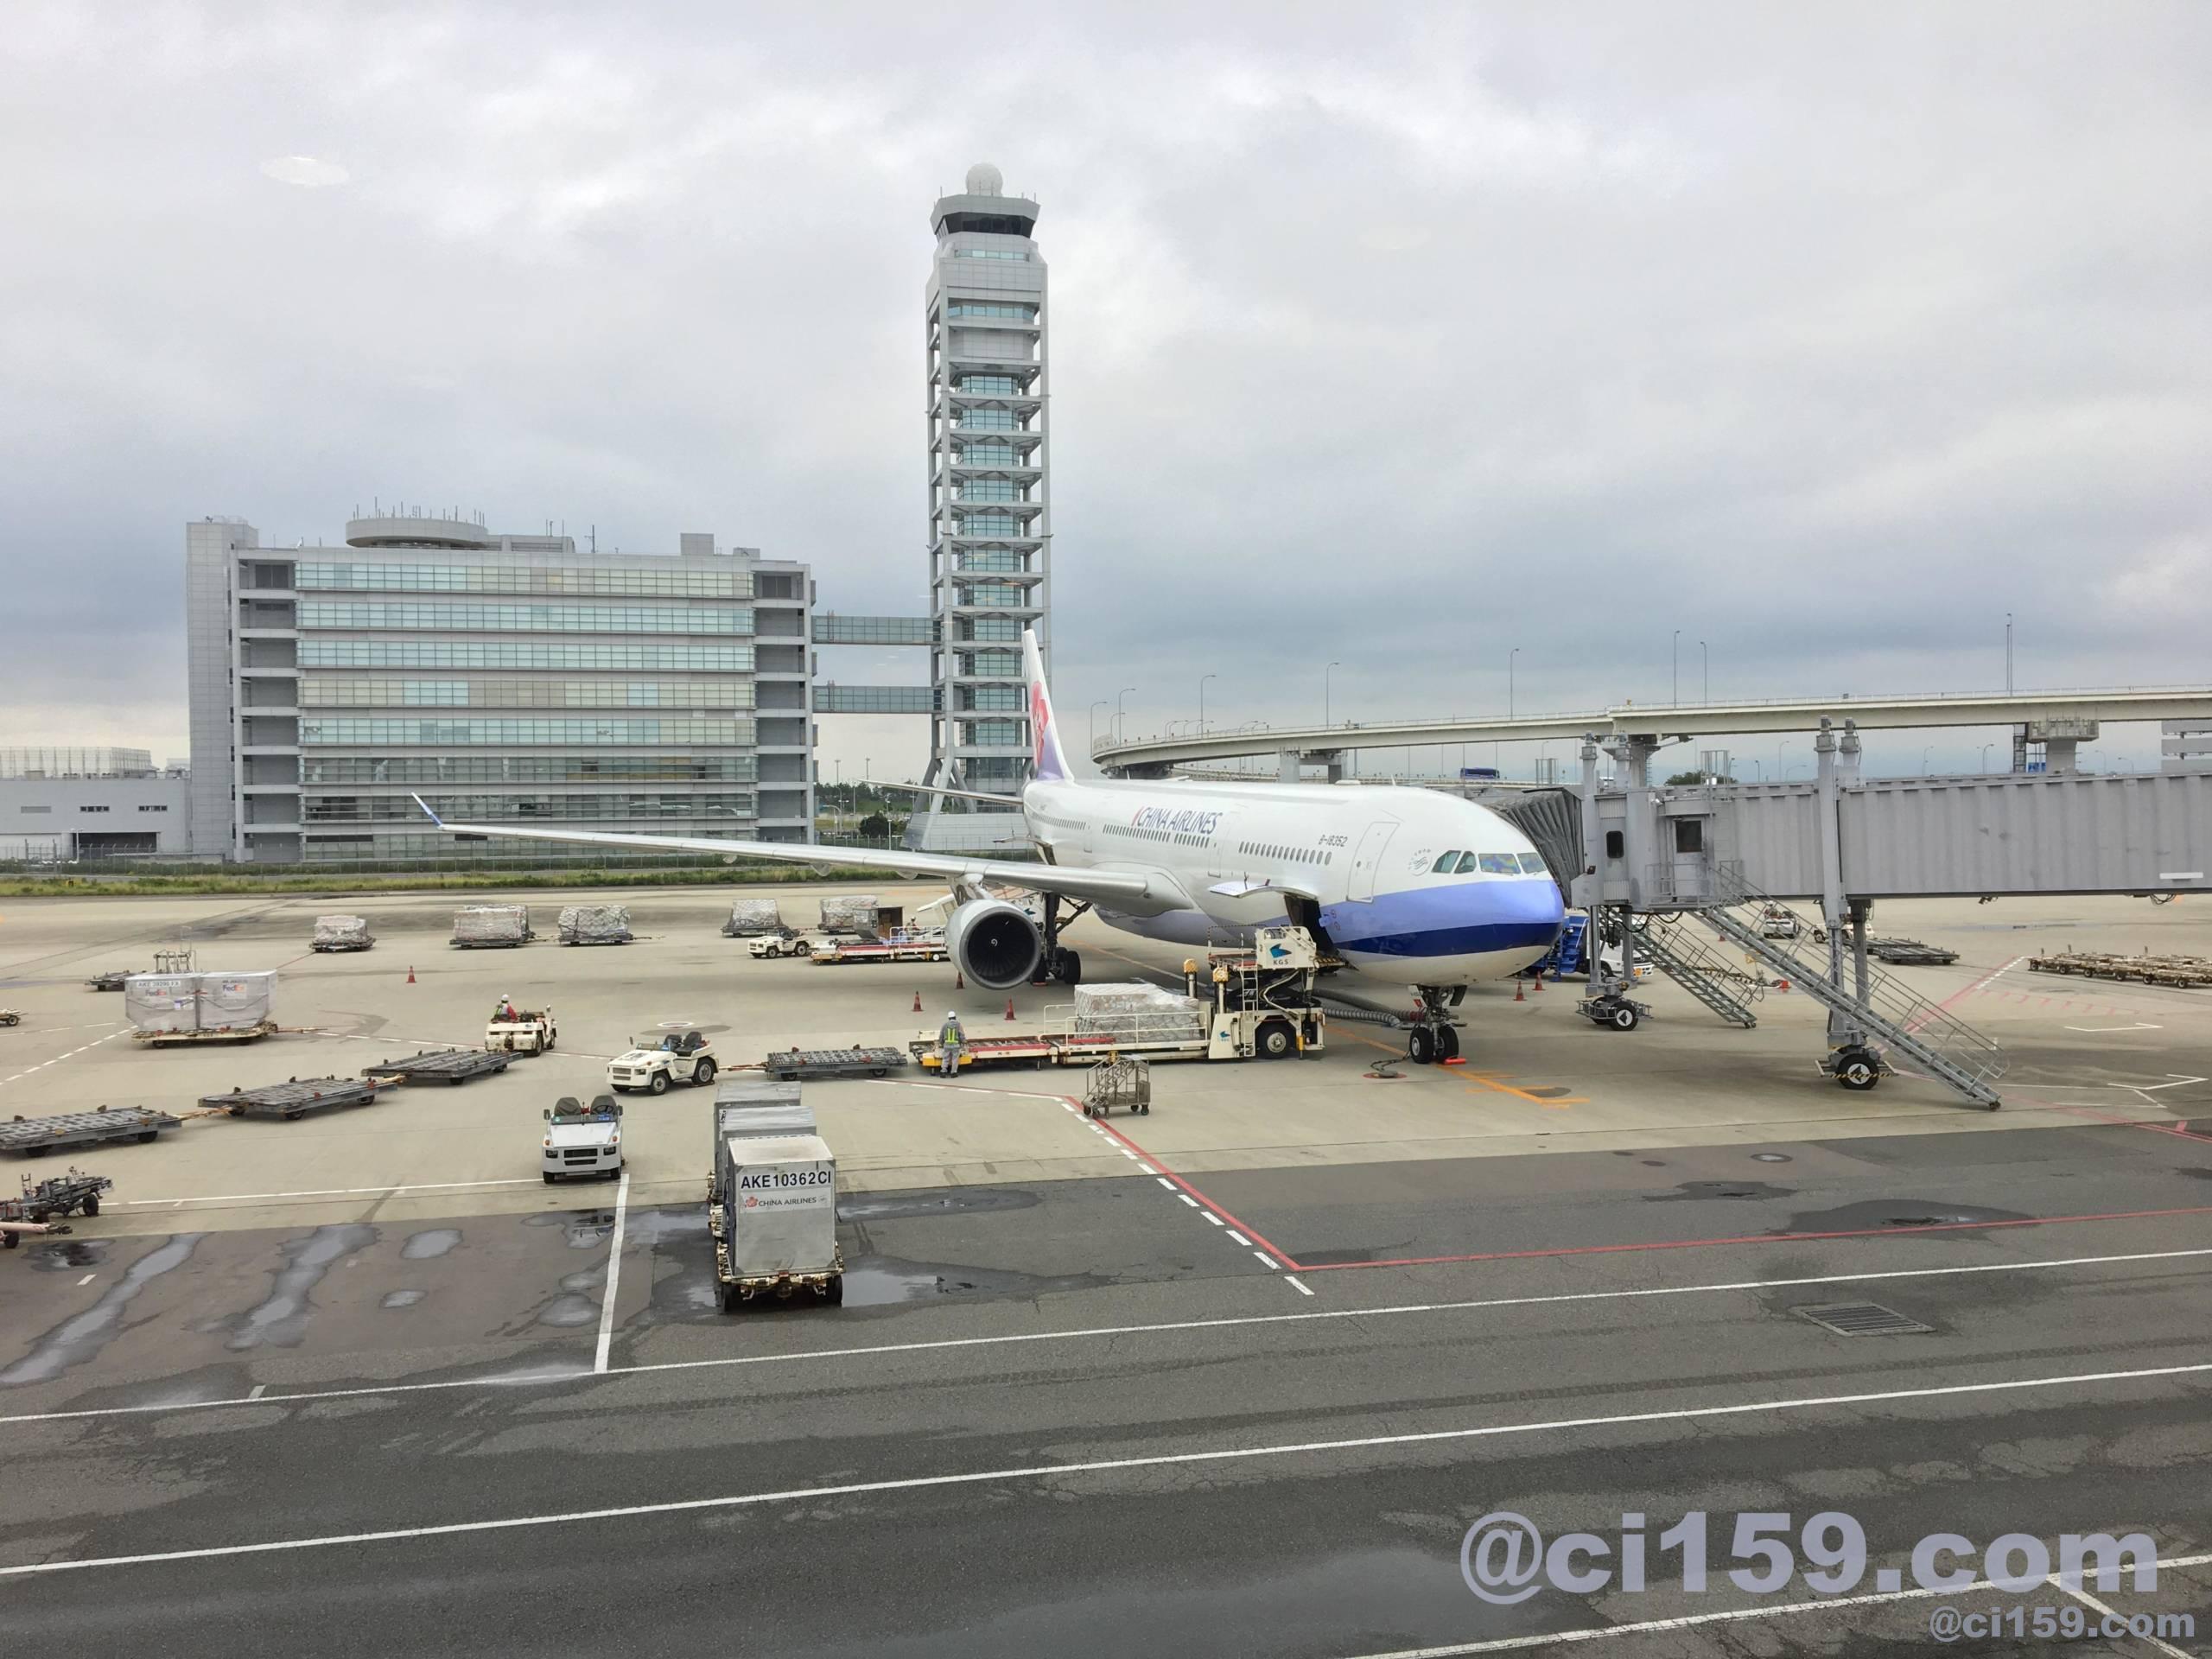 関西空港に駐機中のci159